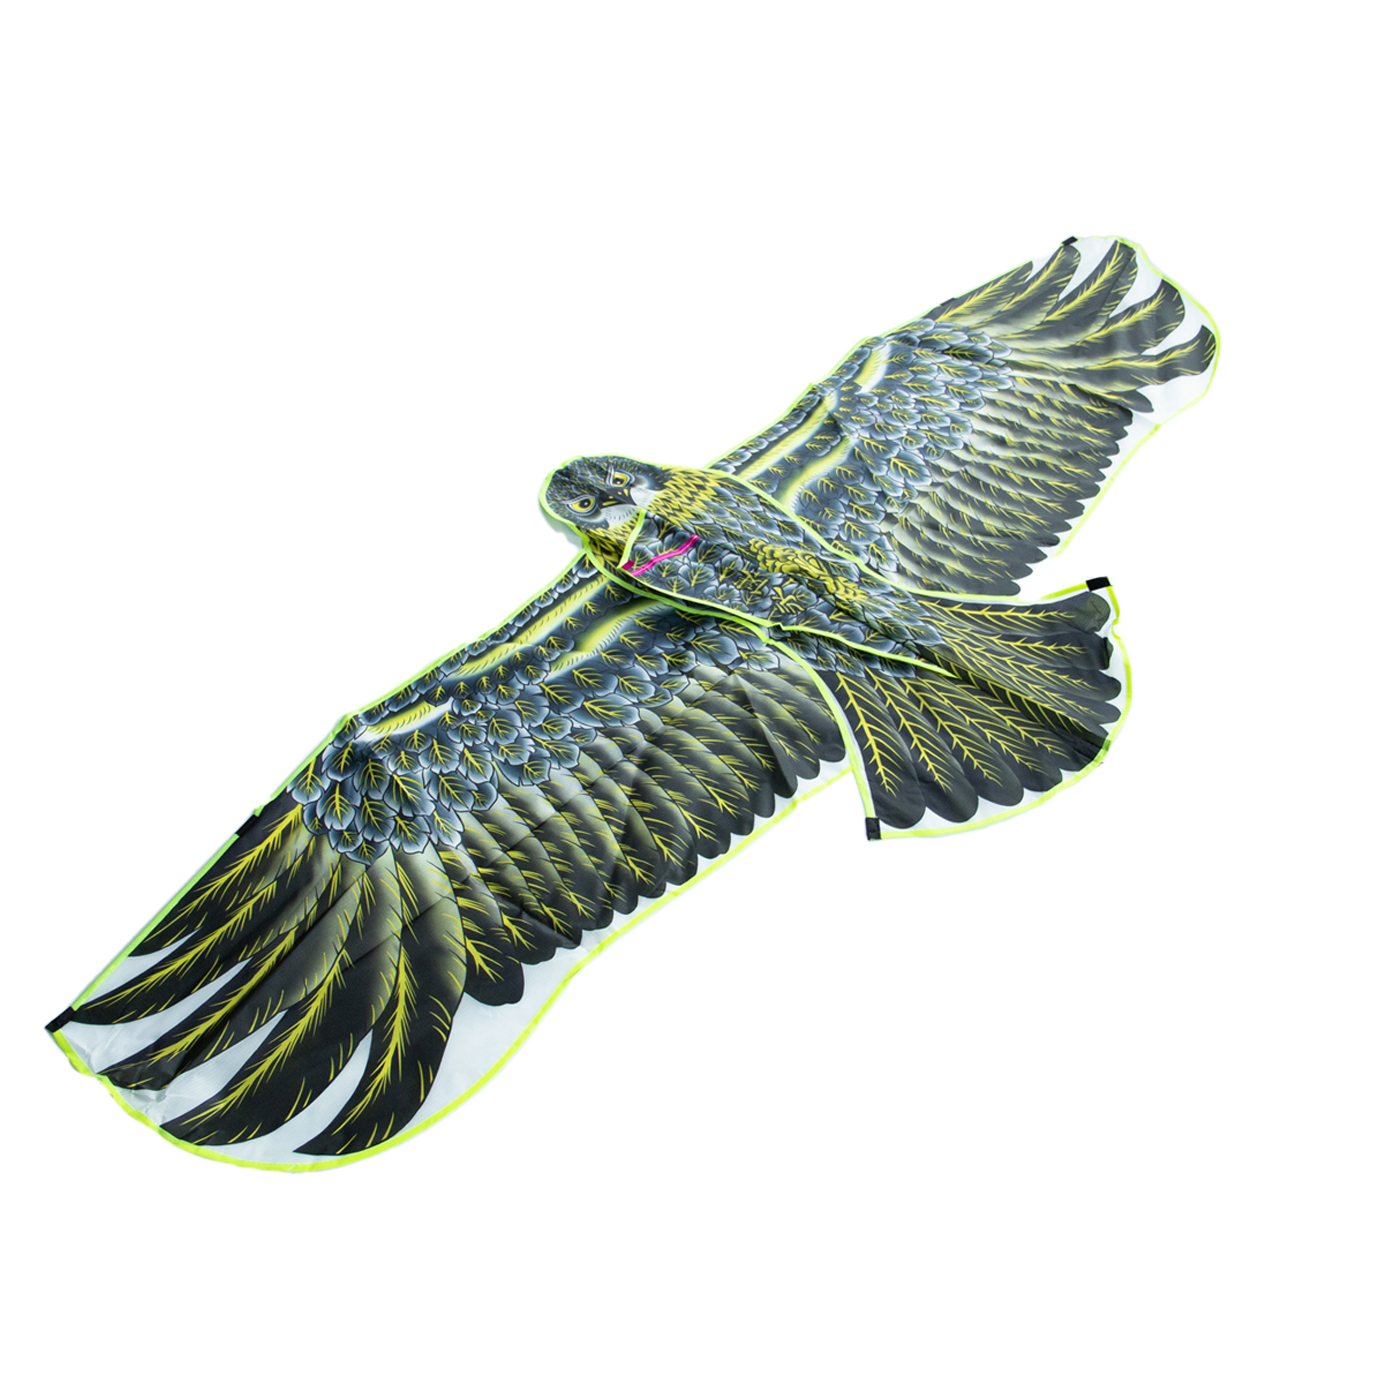 Large Eagle Shaped Flying Kite1